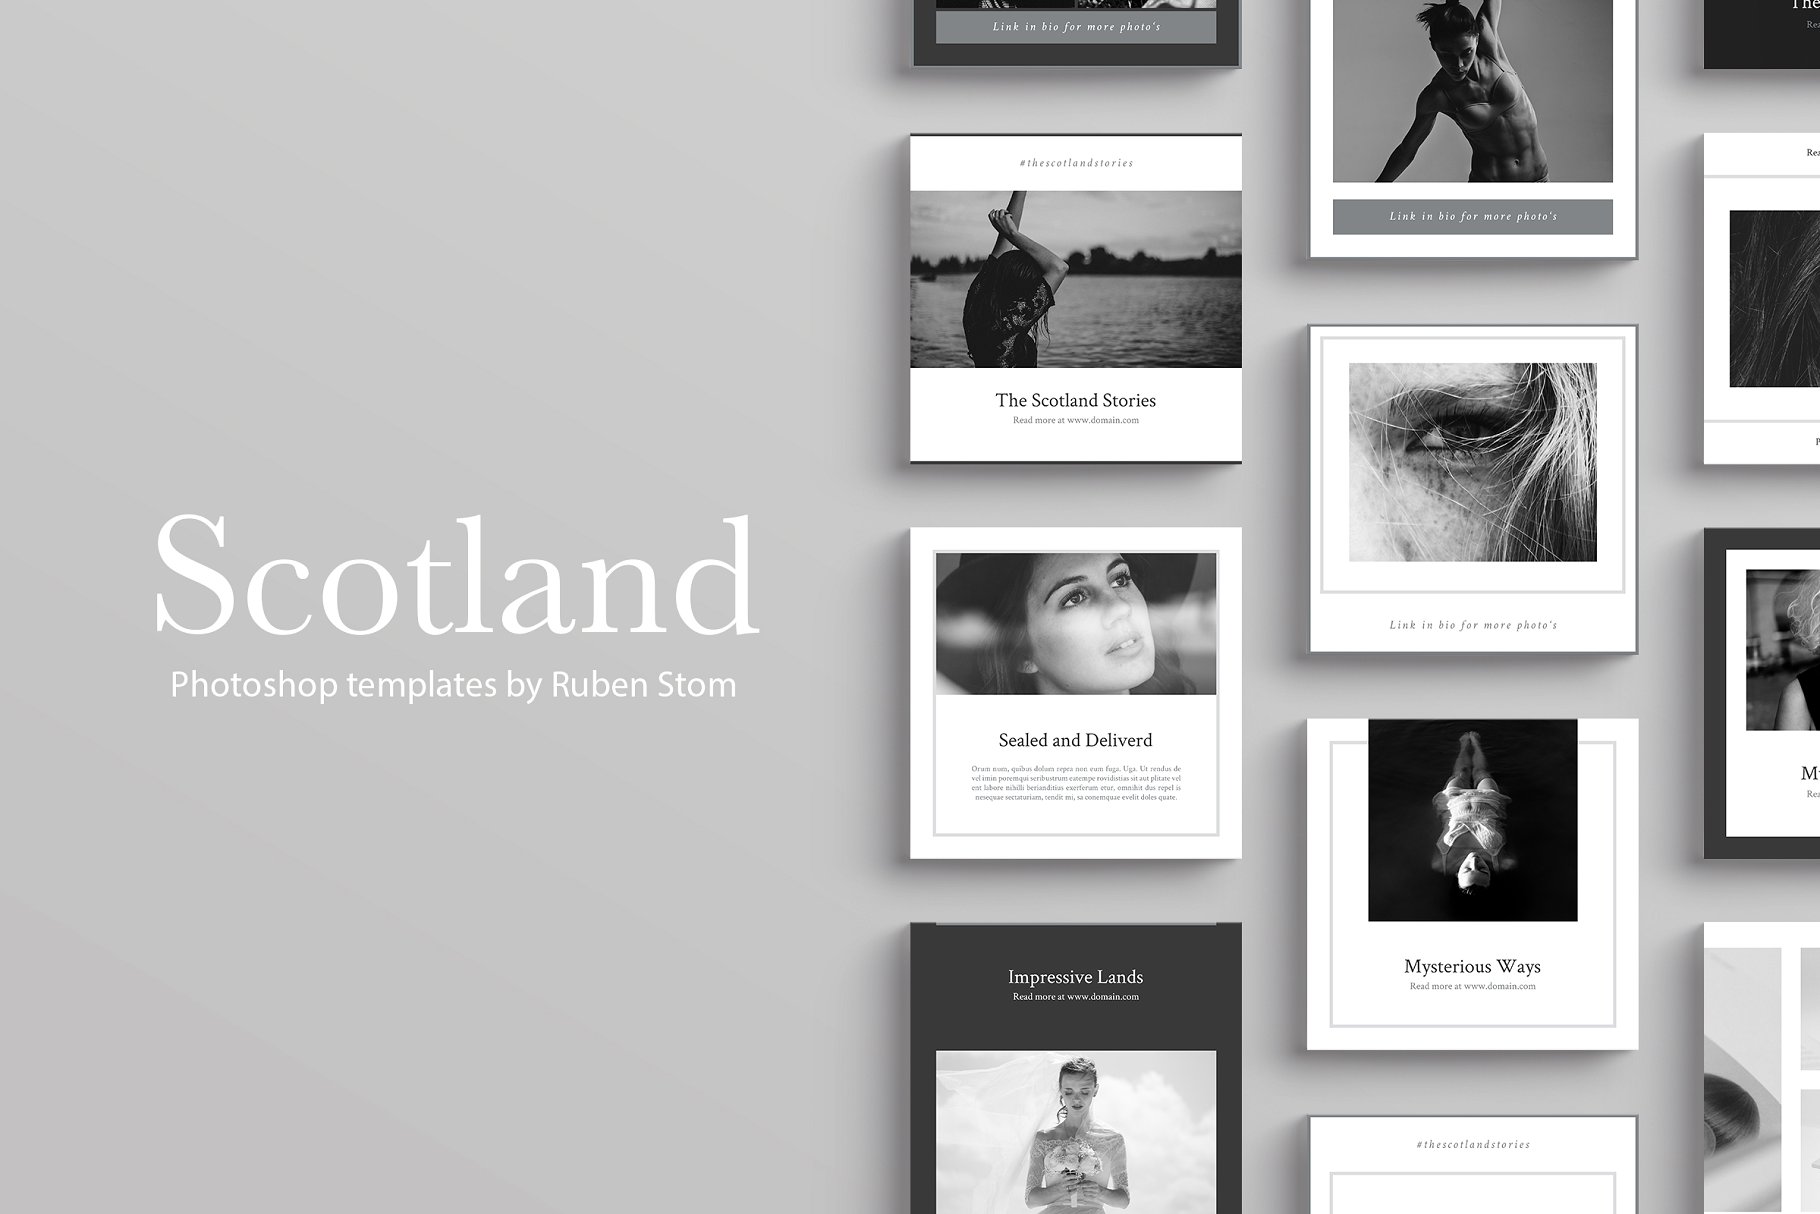 黑白风社交媒体设计素材合集 Scotland Social Media Pack插图